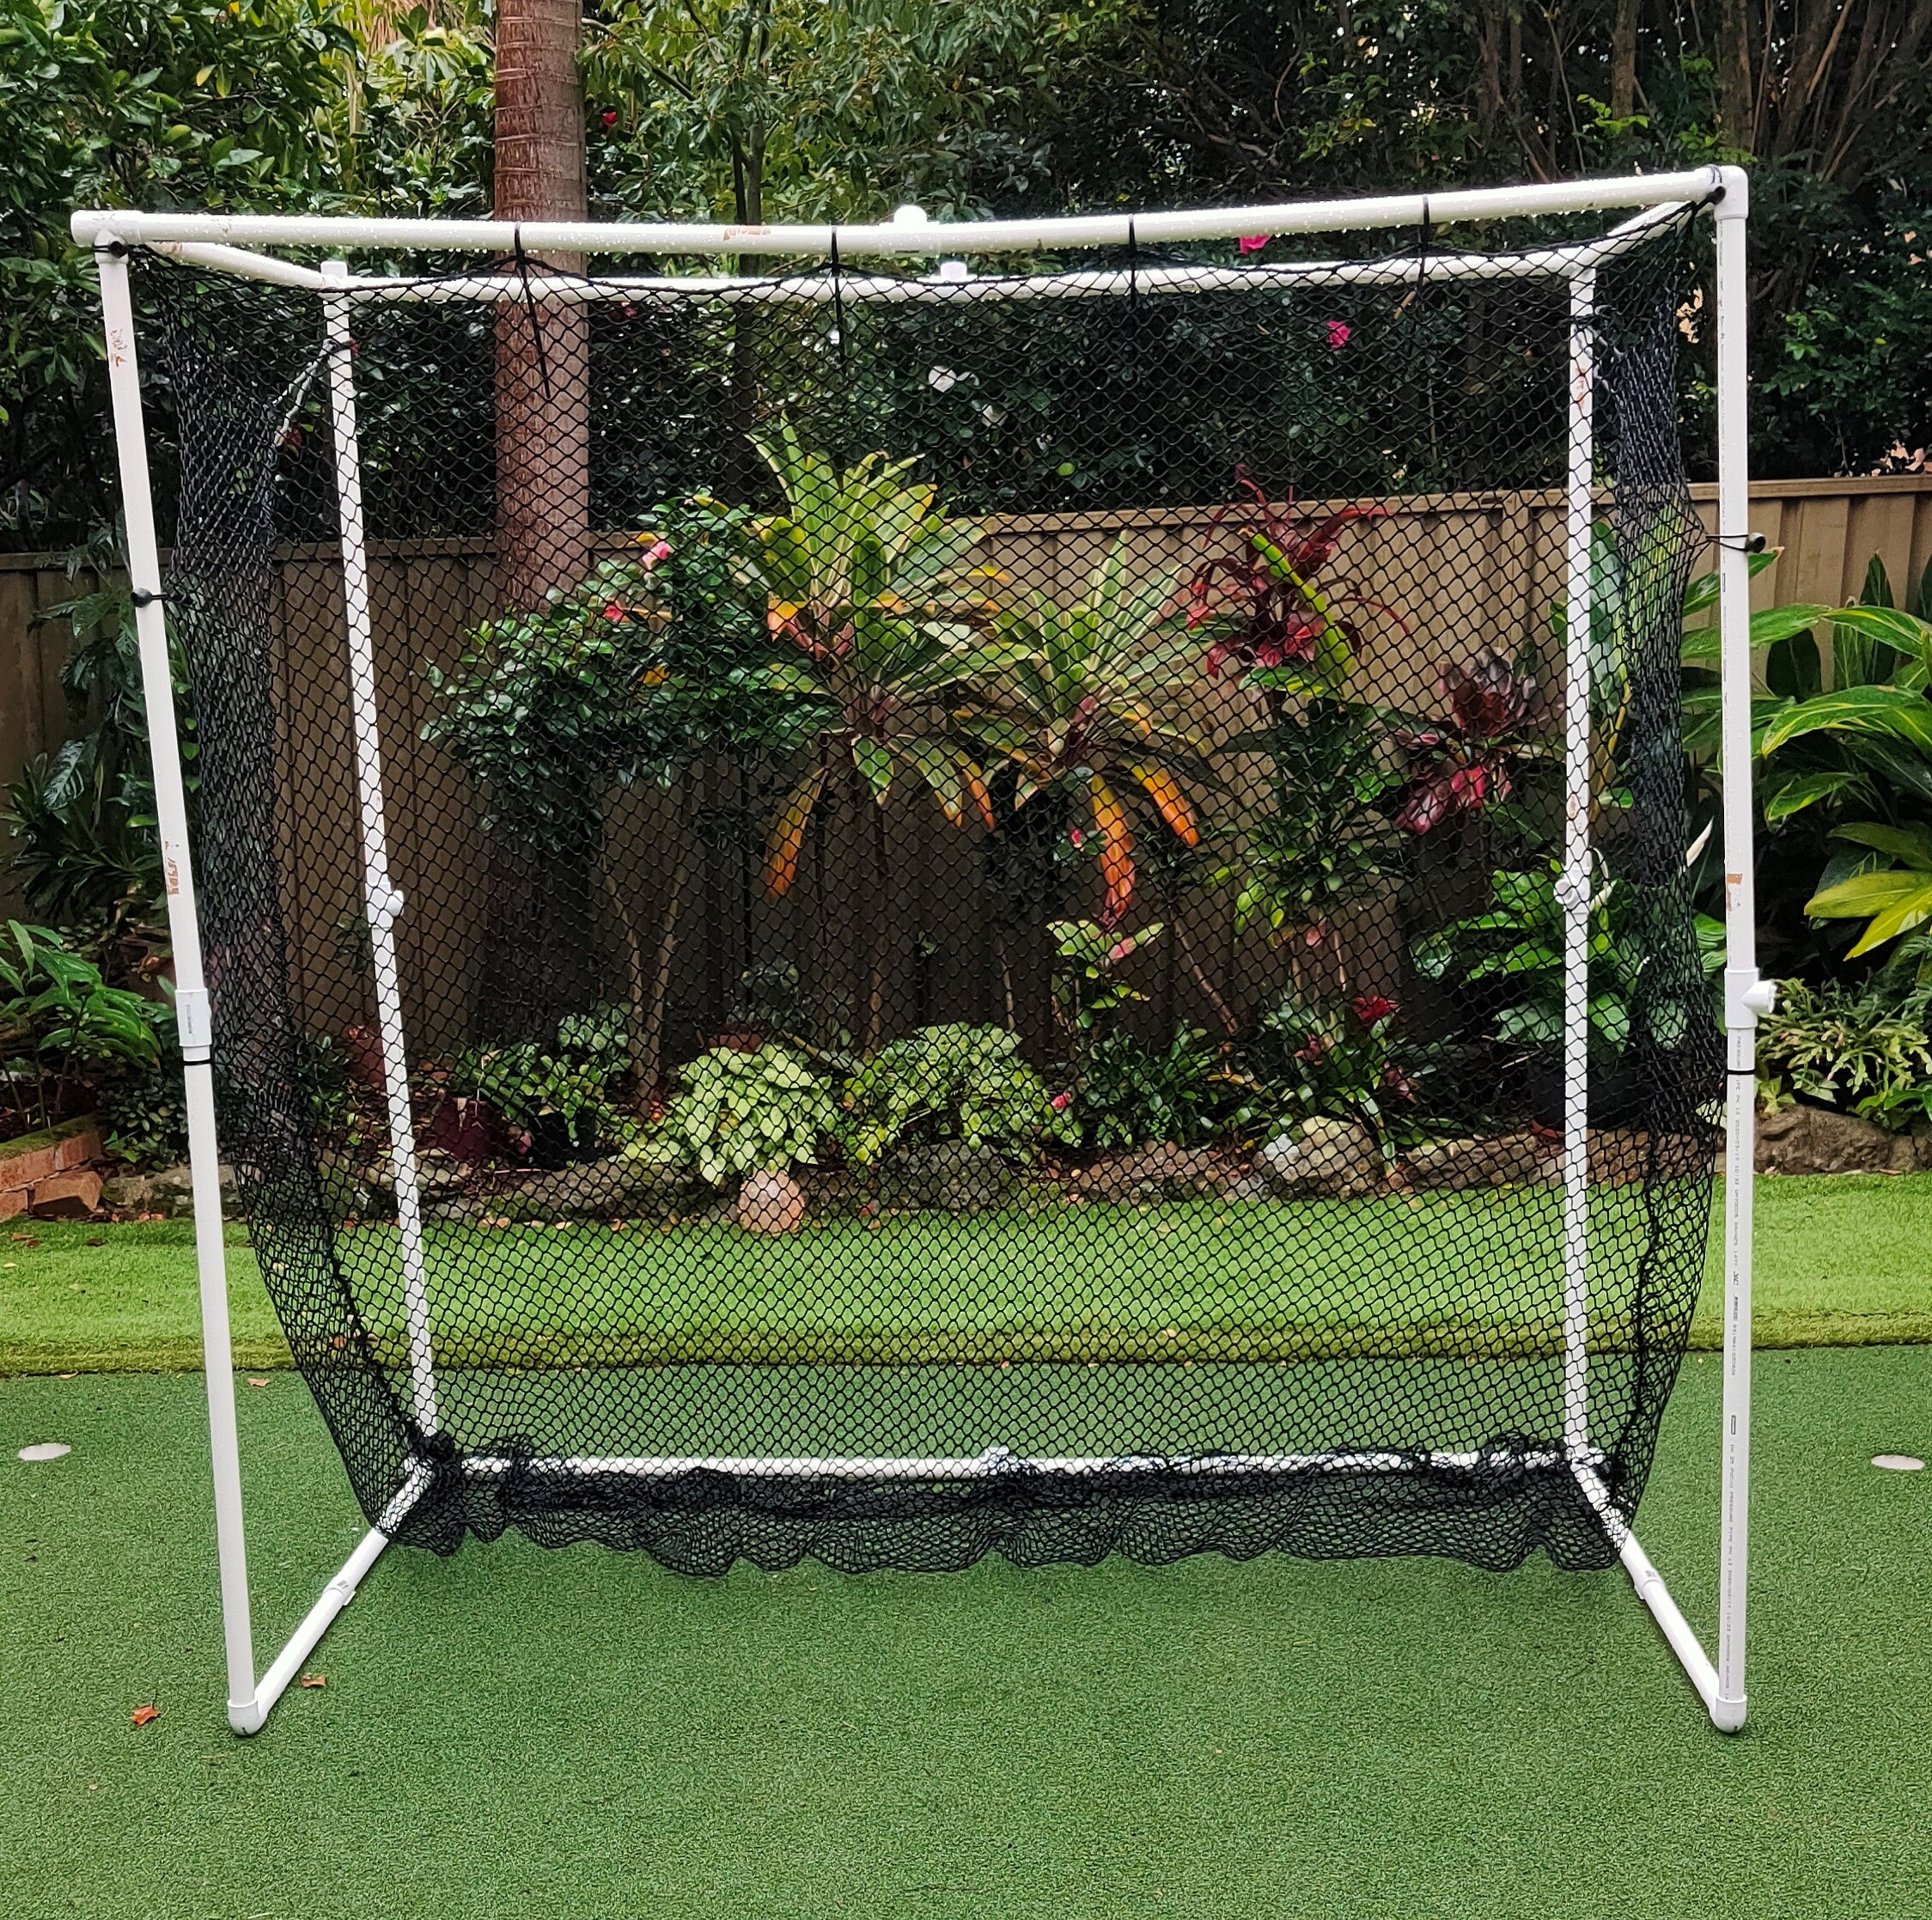 How to Build a Golf Net - Best Designs for DIY Golf Nets – Kaizen Golf